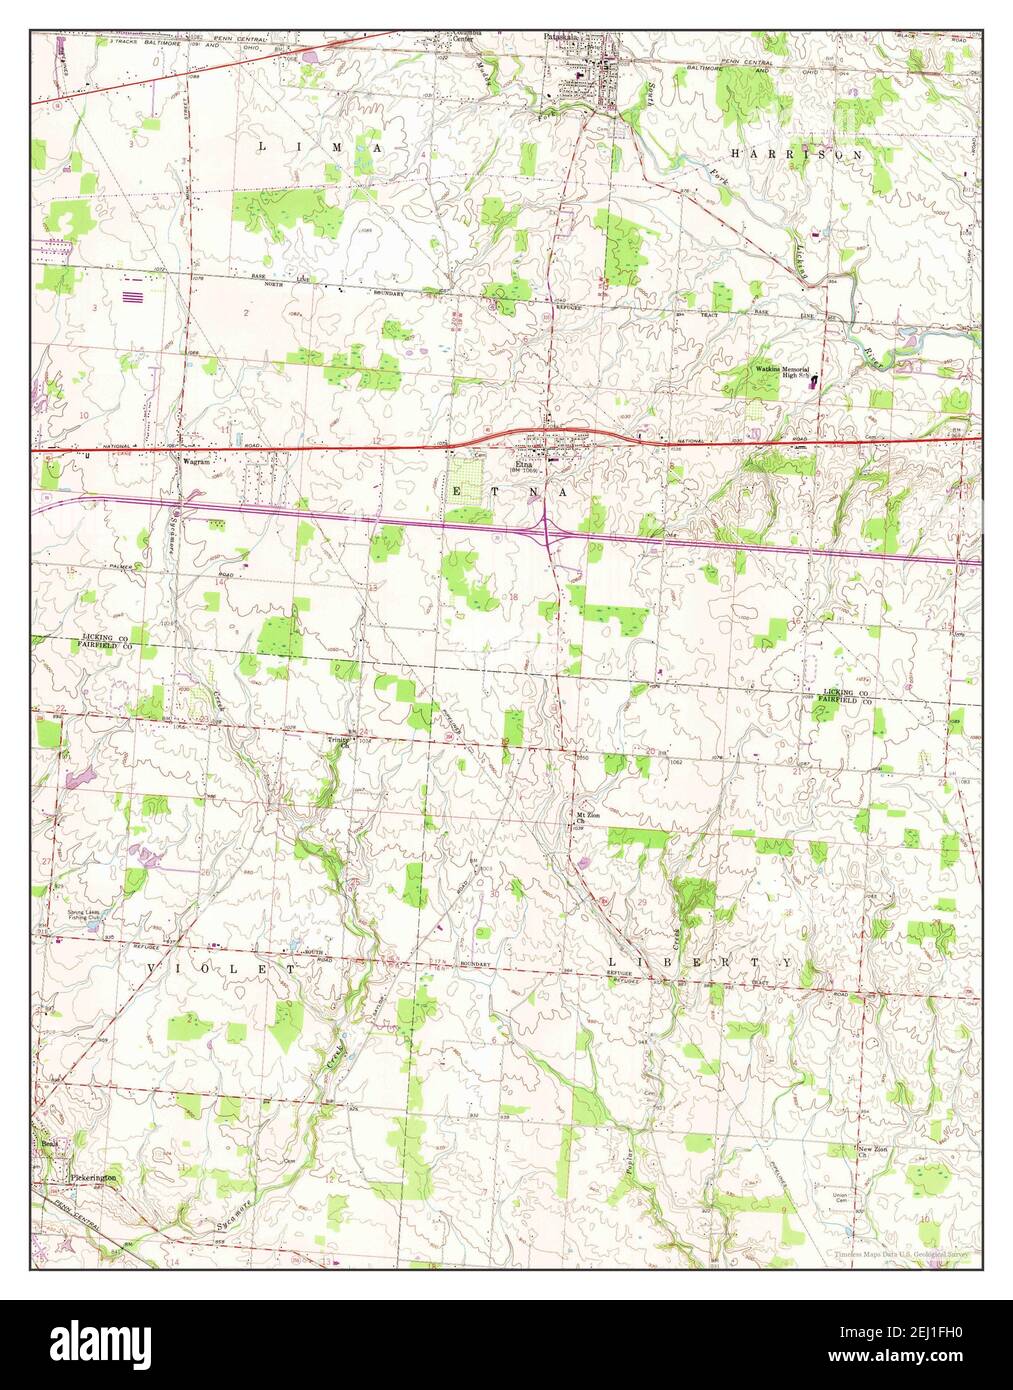 PATASKALA, Ohio, Karte 1958, 1:24000, Vereinigte Staaten von Amerika von Timeless Maps, Daten U.S. Geological Survey Stockfoto